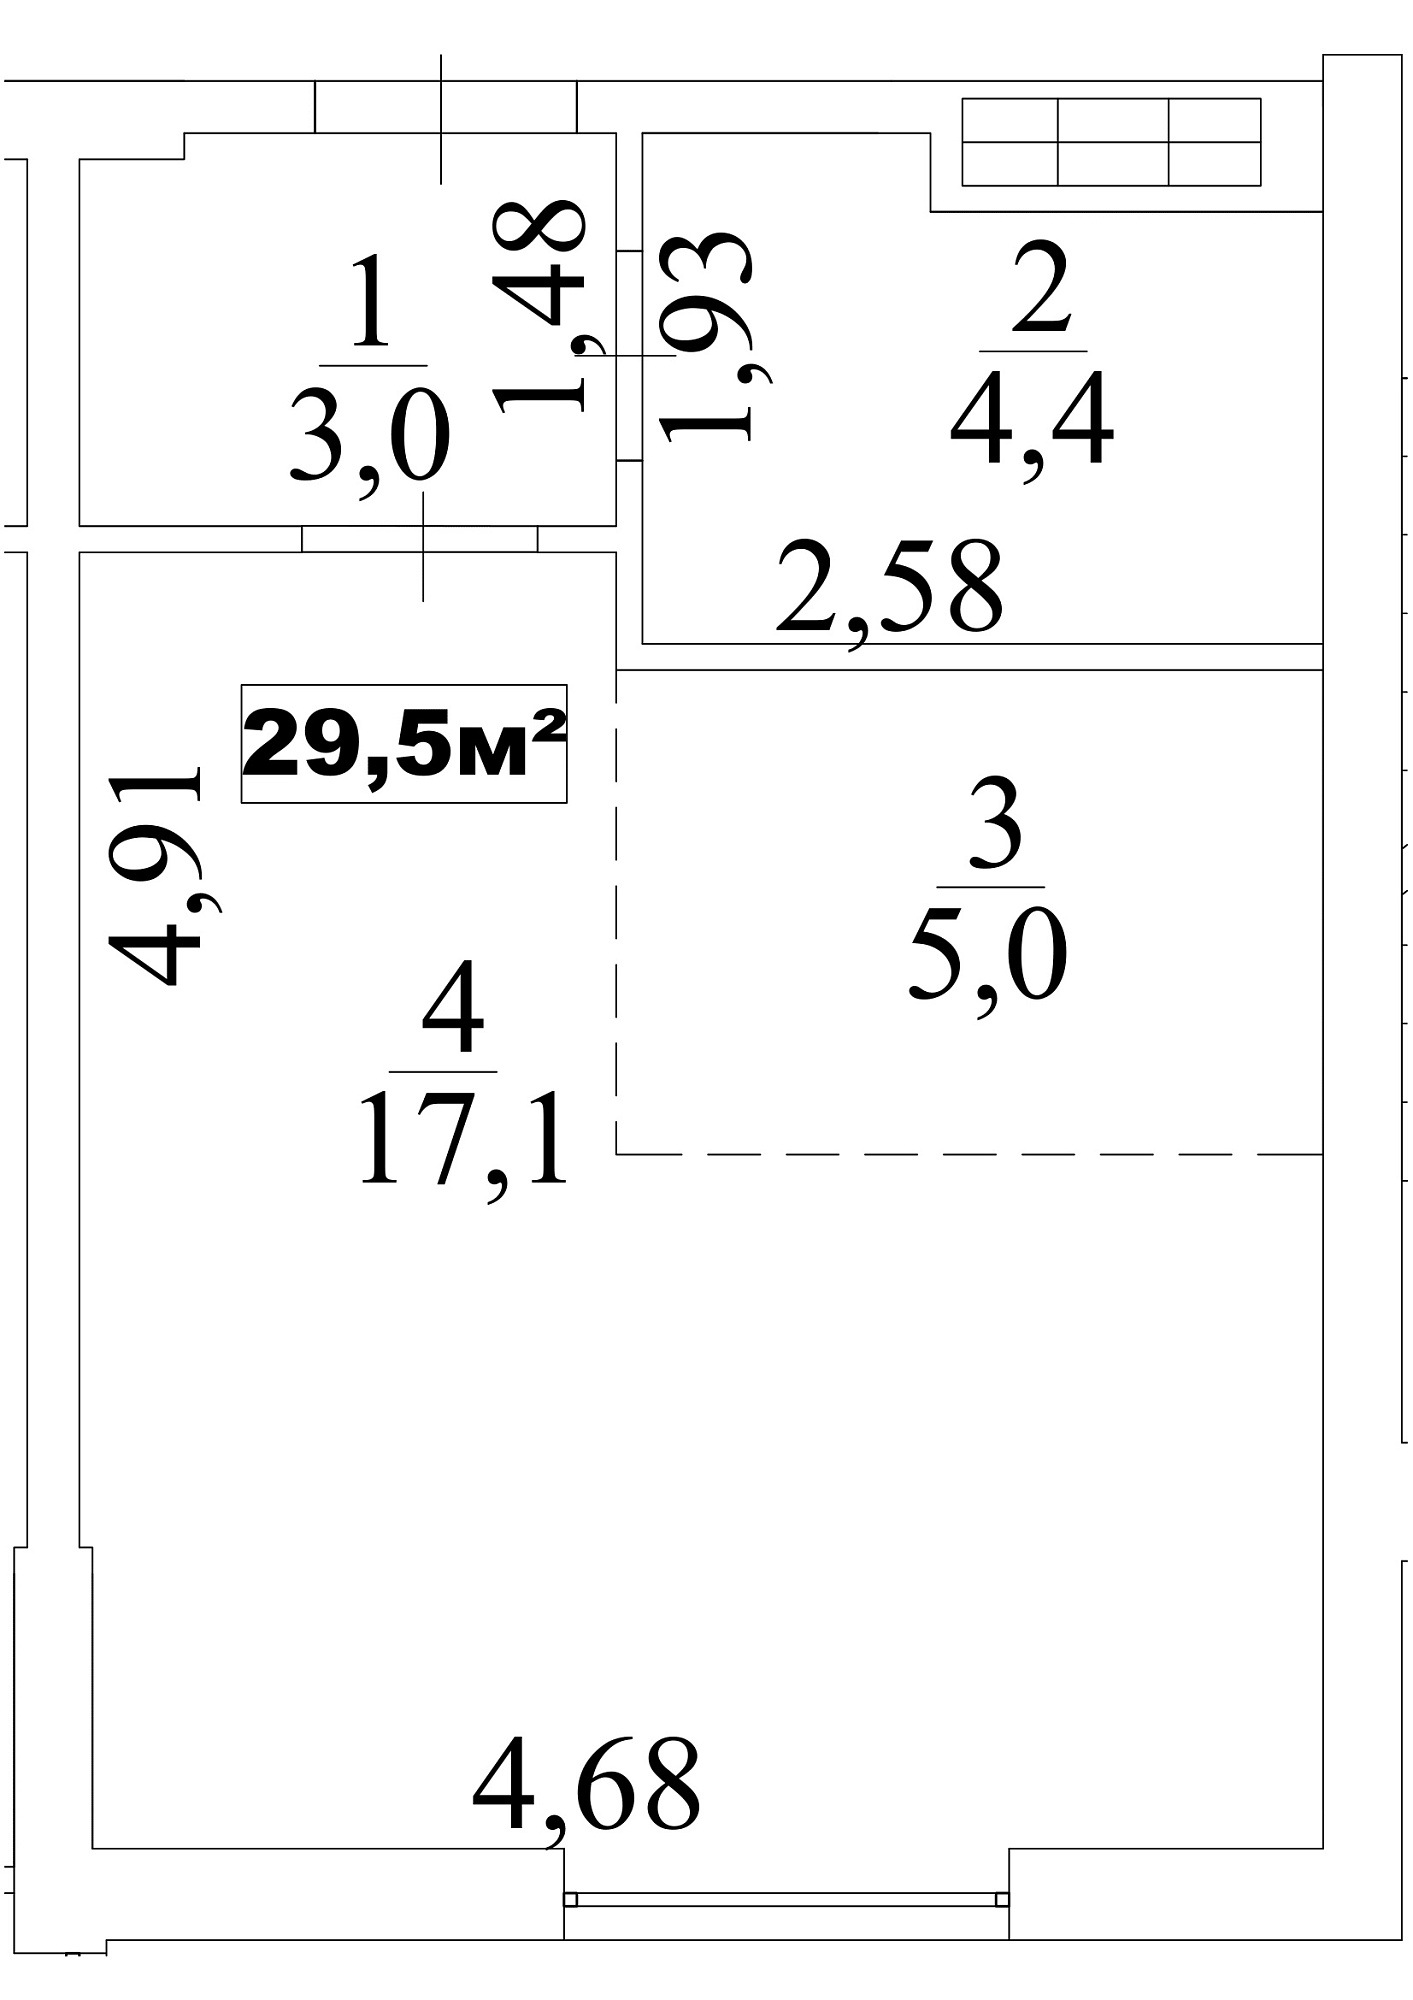 Планування Smart-квартира площею 29.5м2, AB-10-03/0019а.